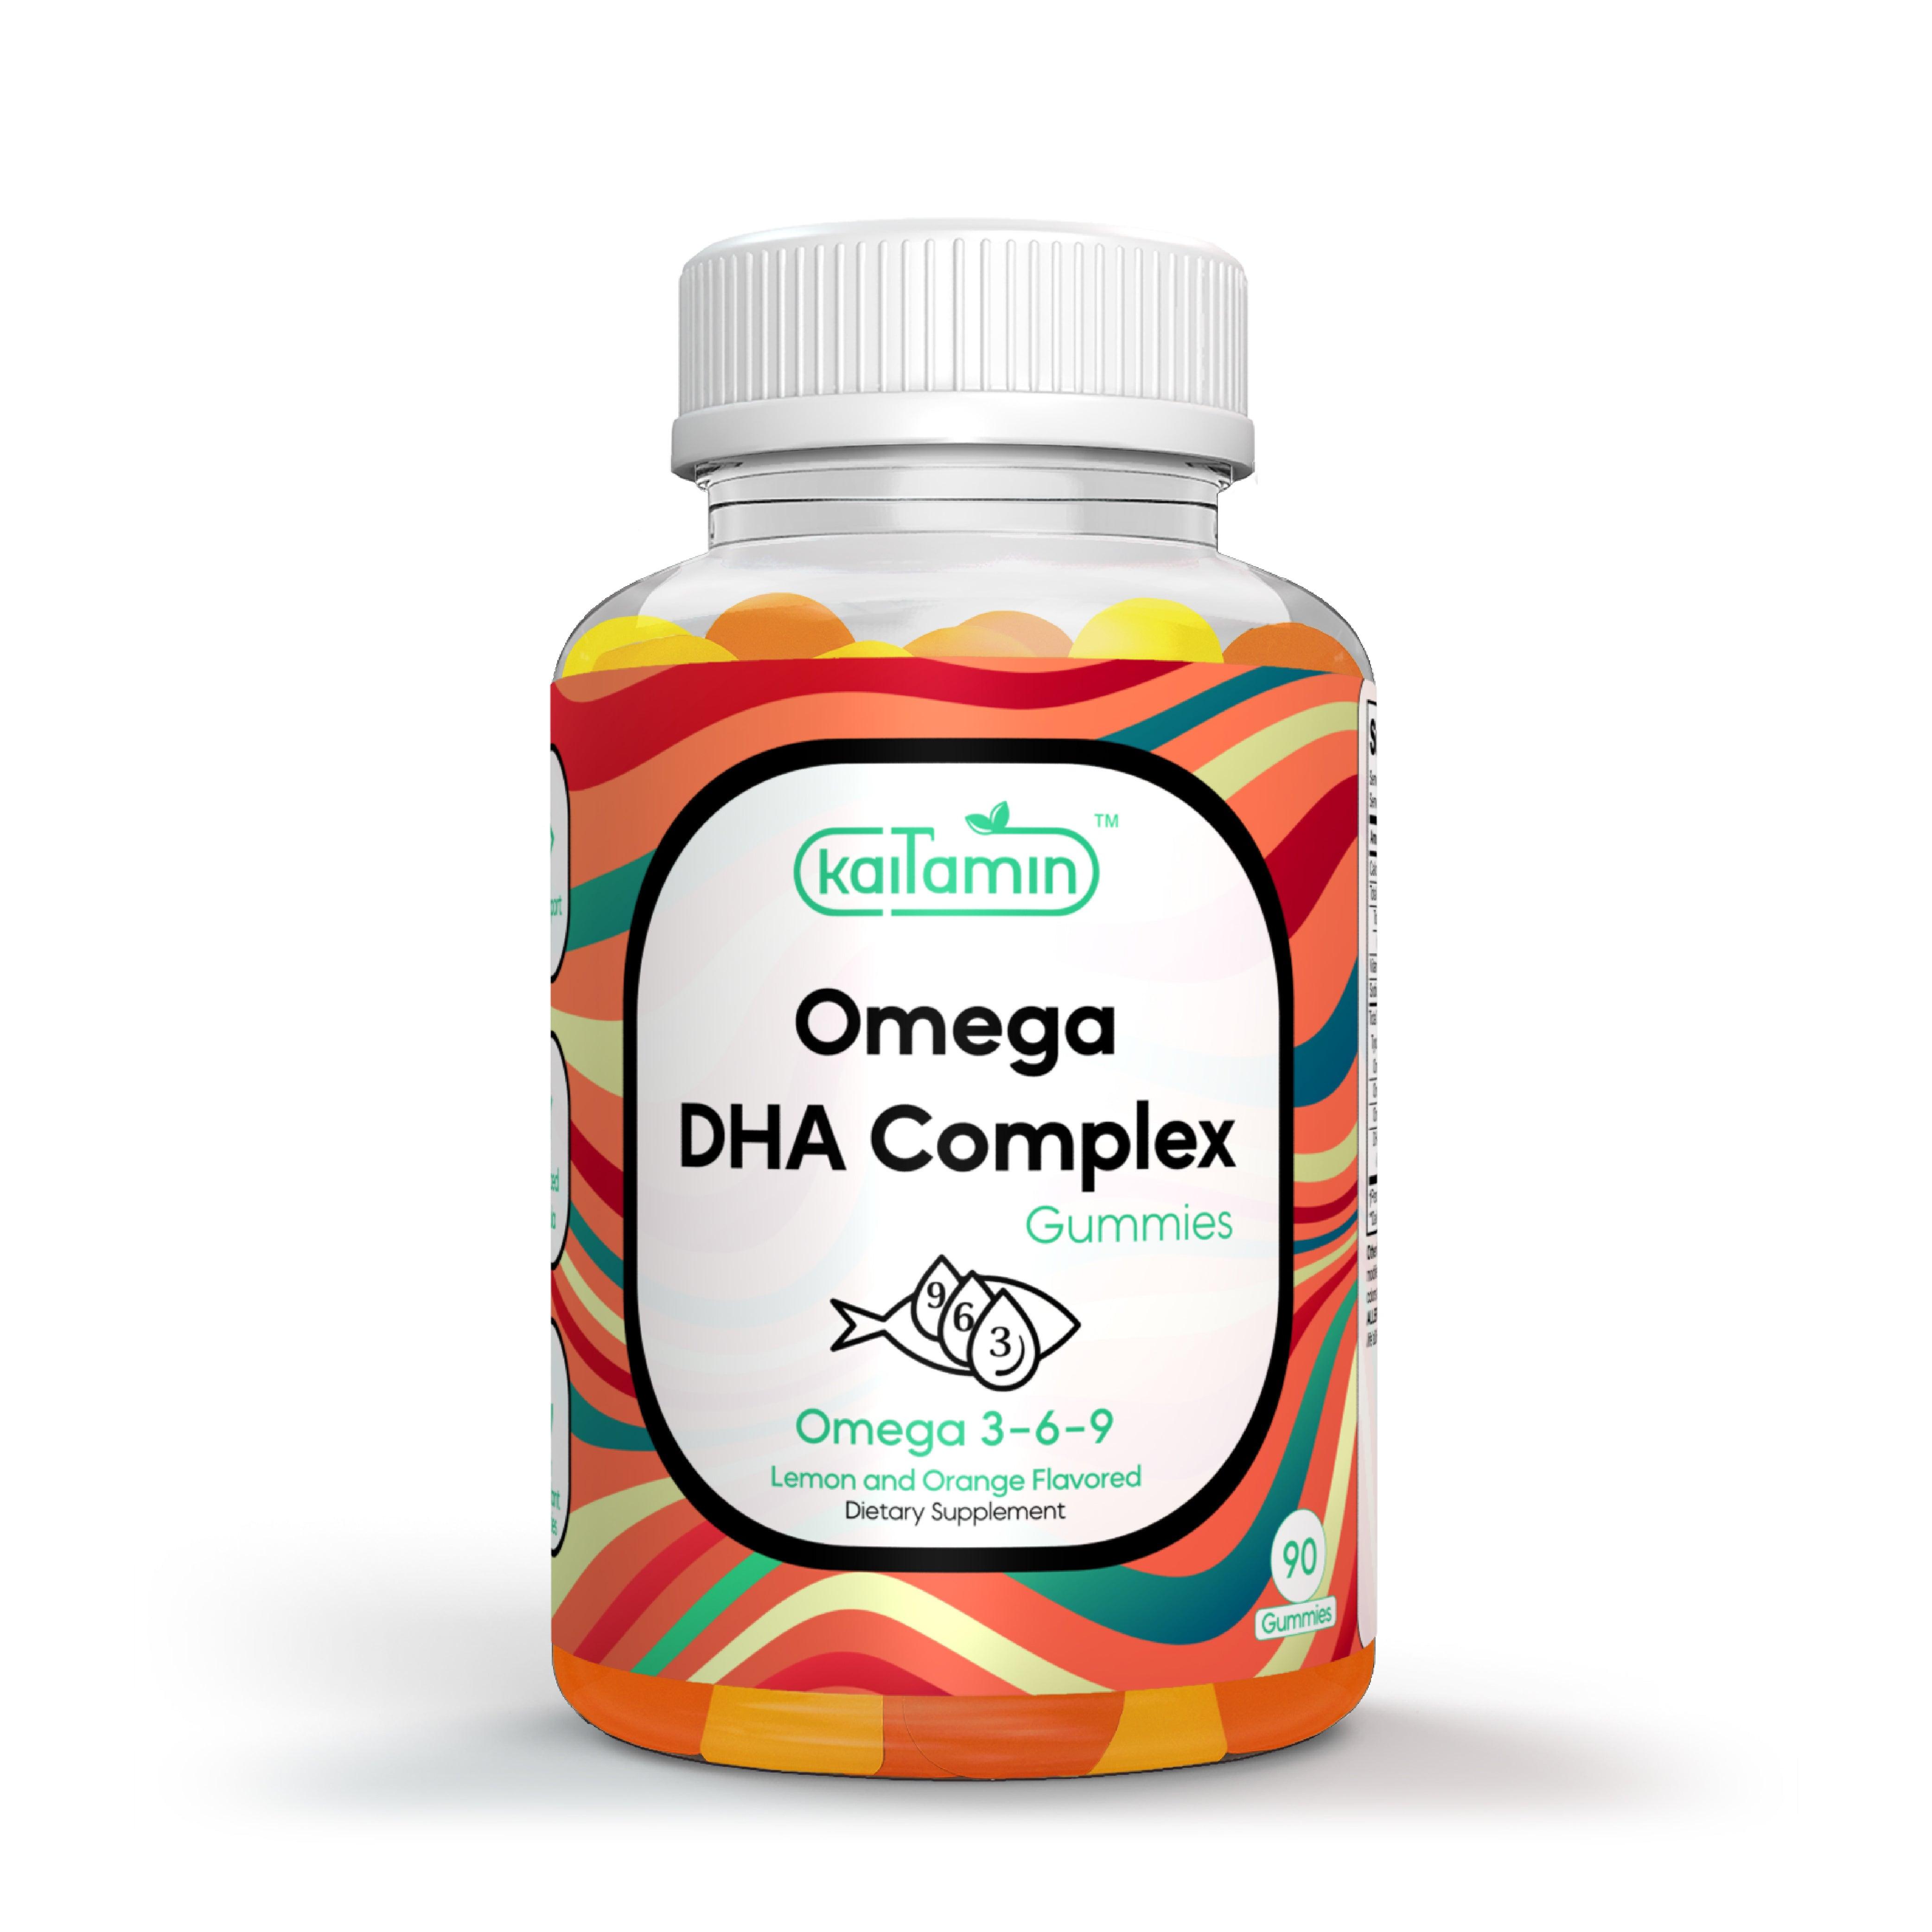 Omega DHA Complex - Brain, Memory, Heart Health Support - 90 Gummies - Kaitamin